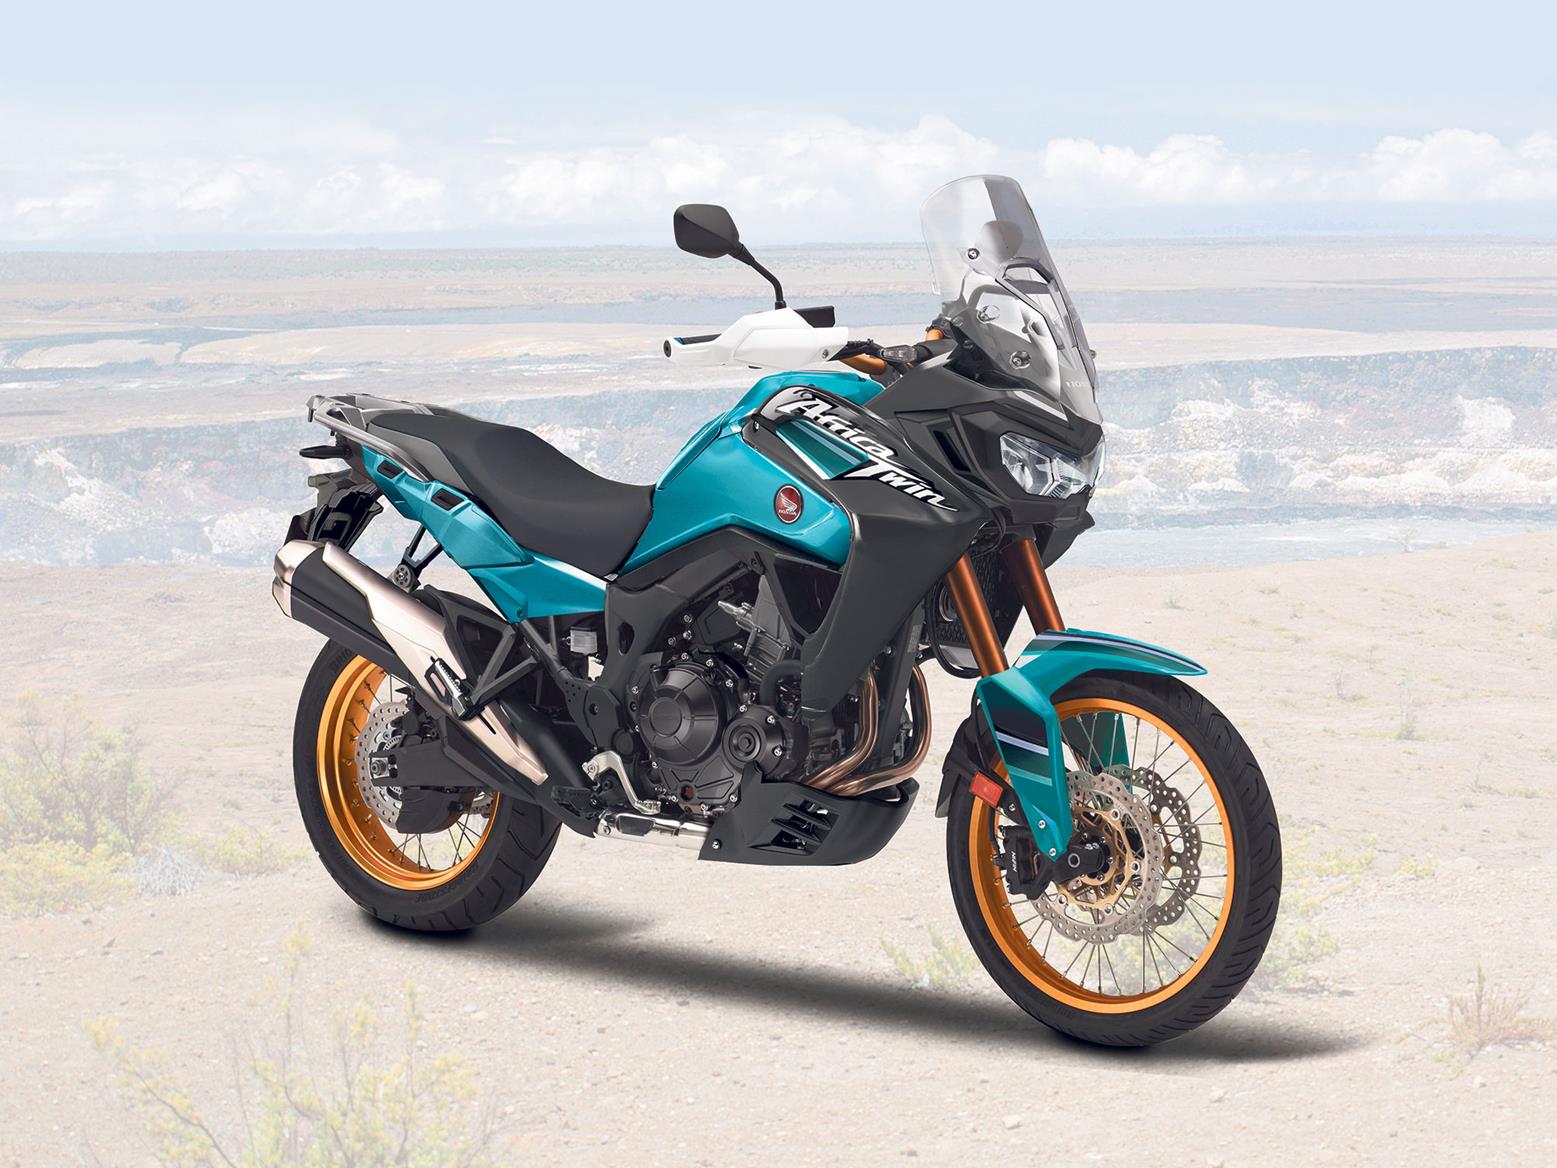 New Honda Motorcycle Models 2021